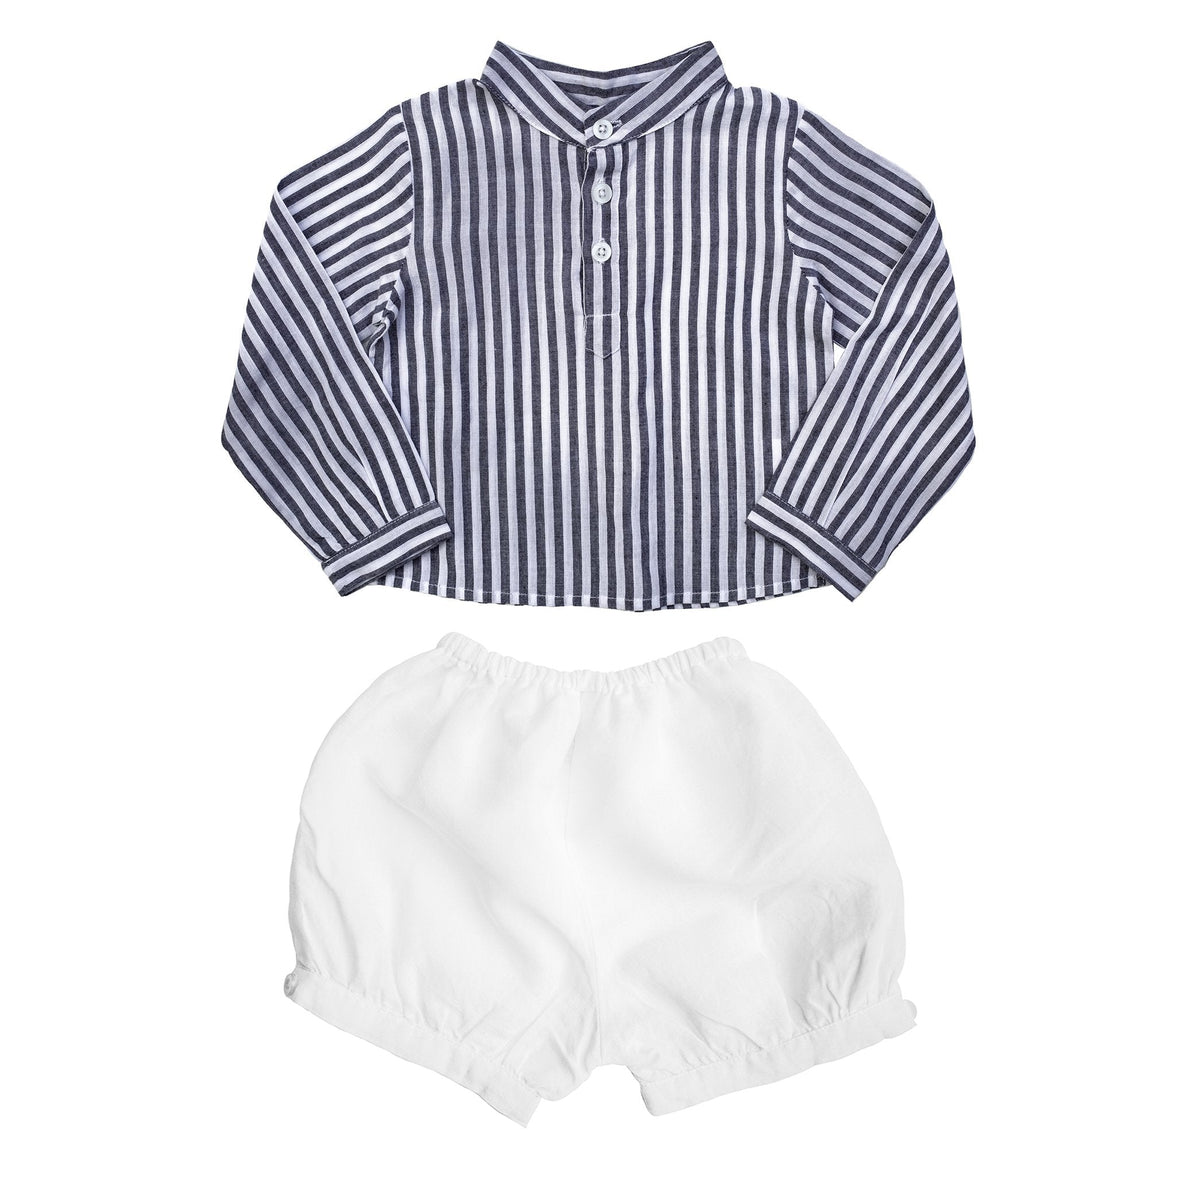 Boys Harbor Island Shirt And White Linen Short Gift Set